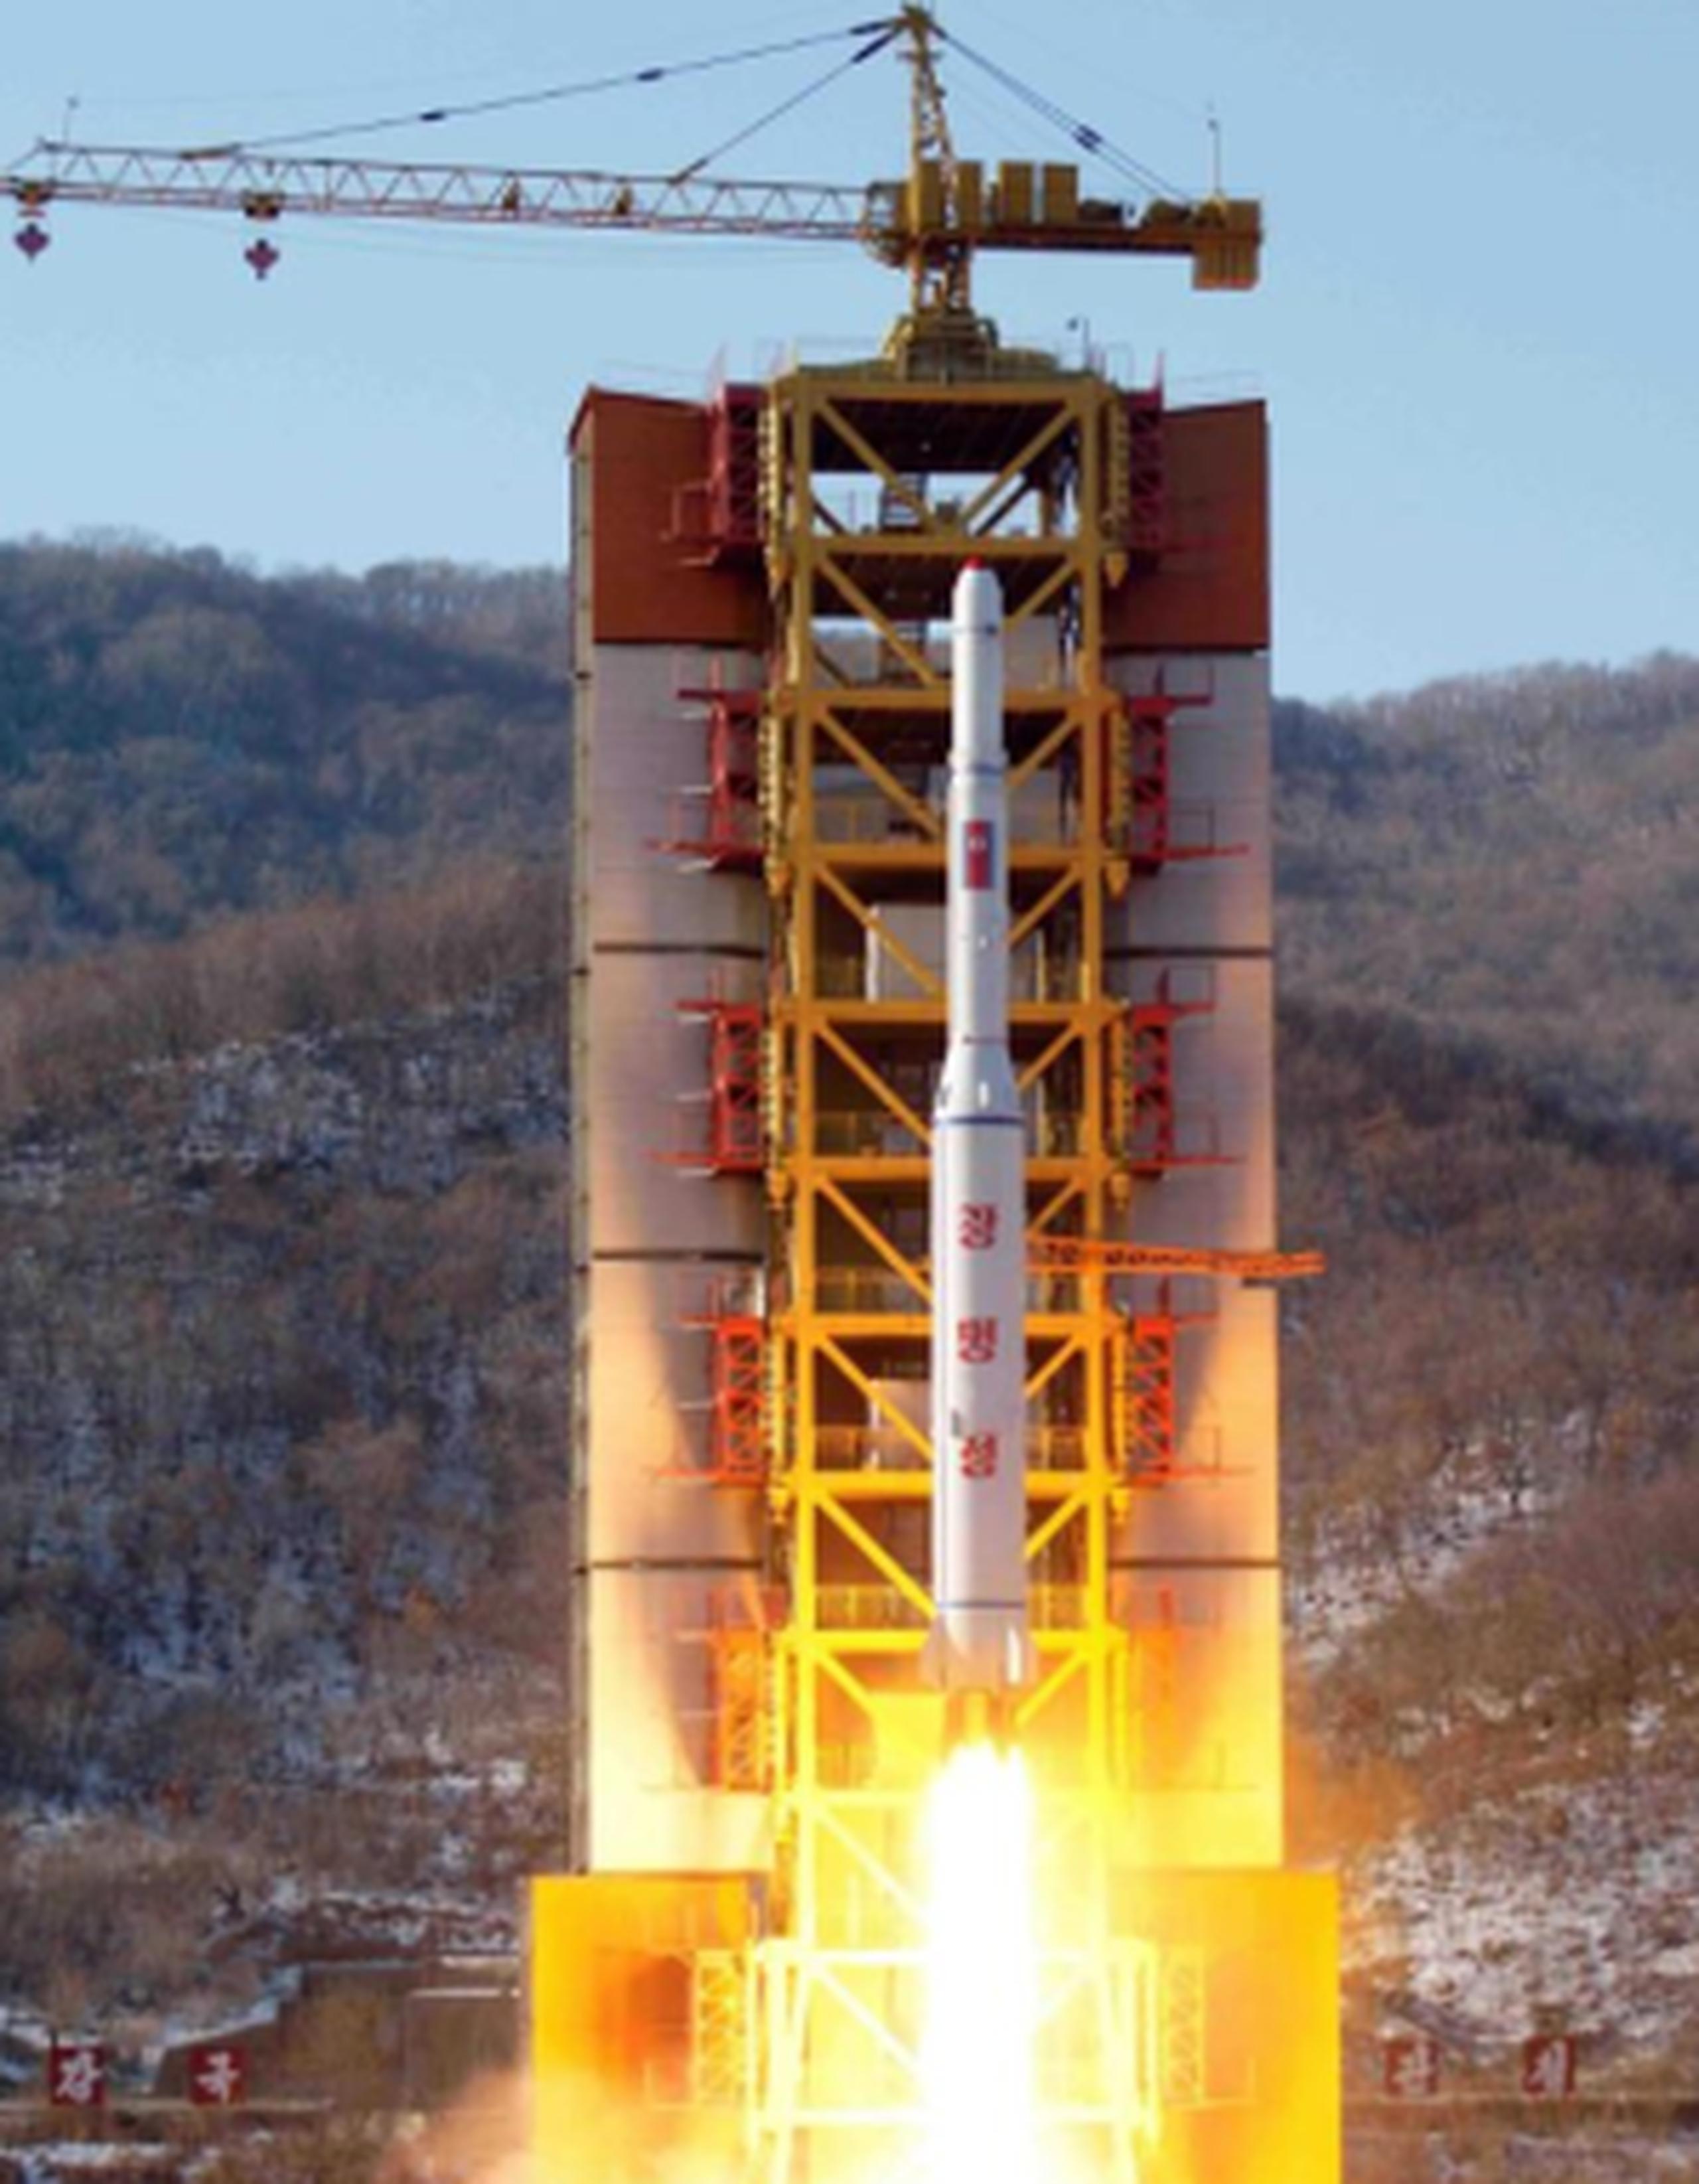 El cohete se lanzó desde la costa oeste de Corea del Norte y fue rastreado por separado por los gobiernos de Estados Unidos, Japón y Corea del Sur. (EFE)